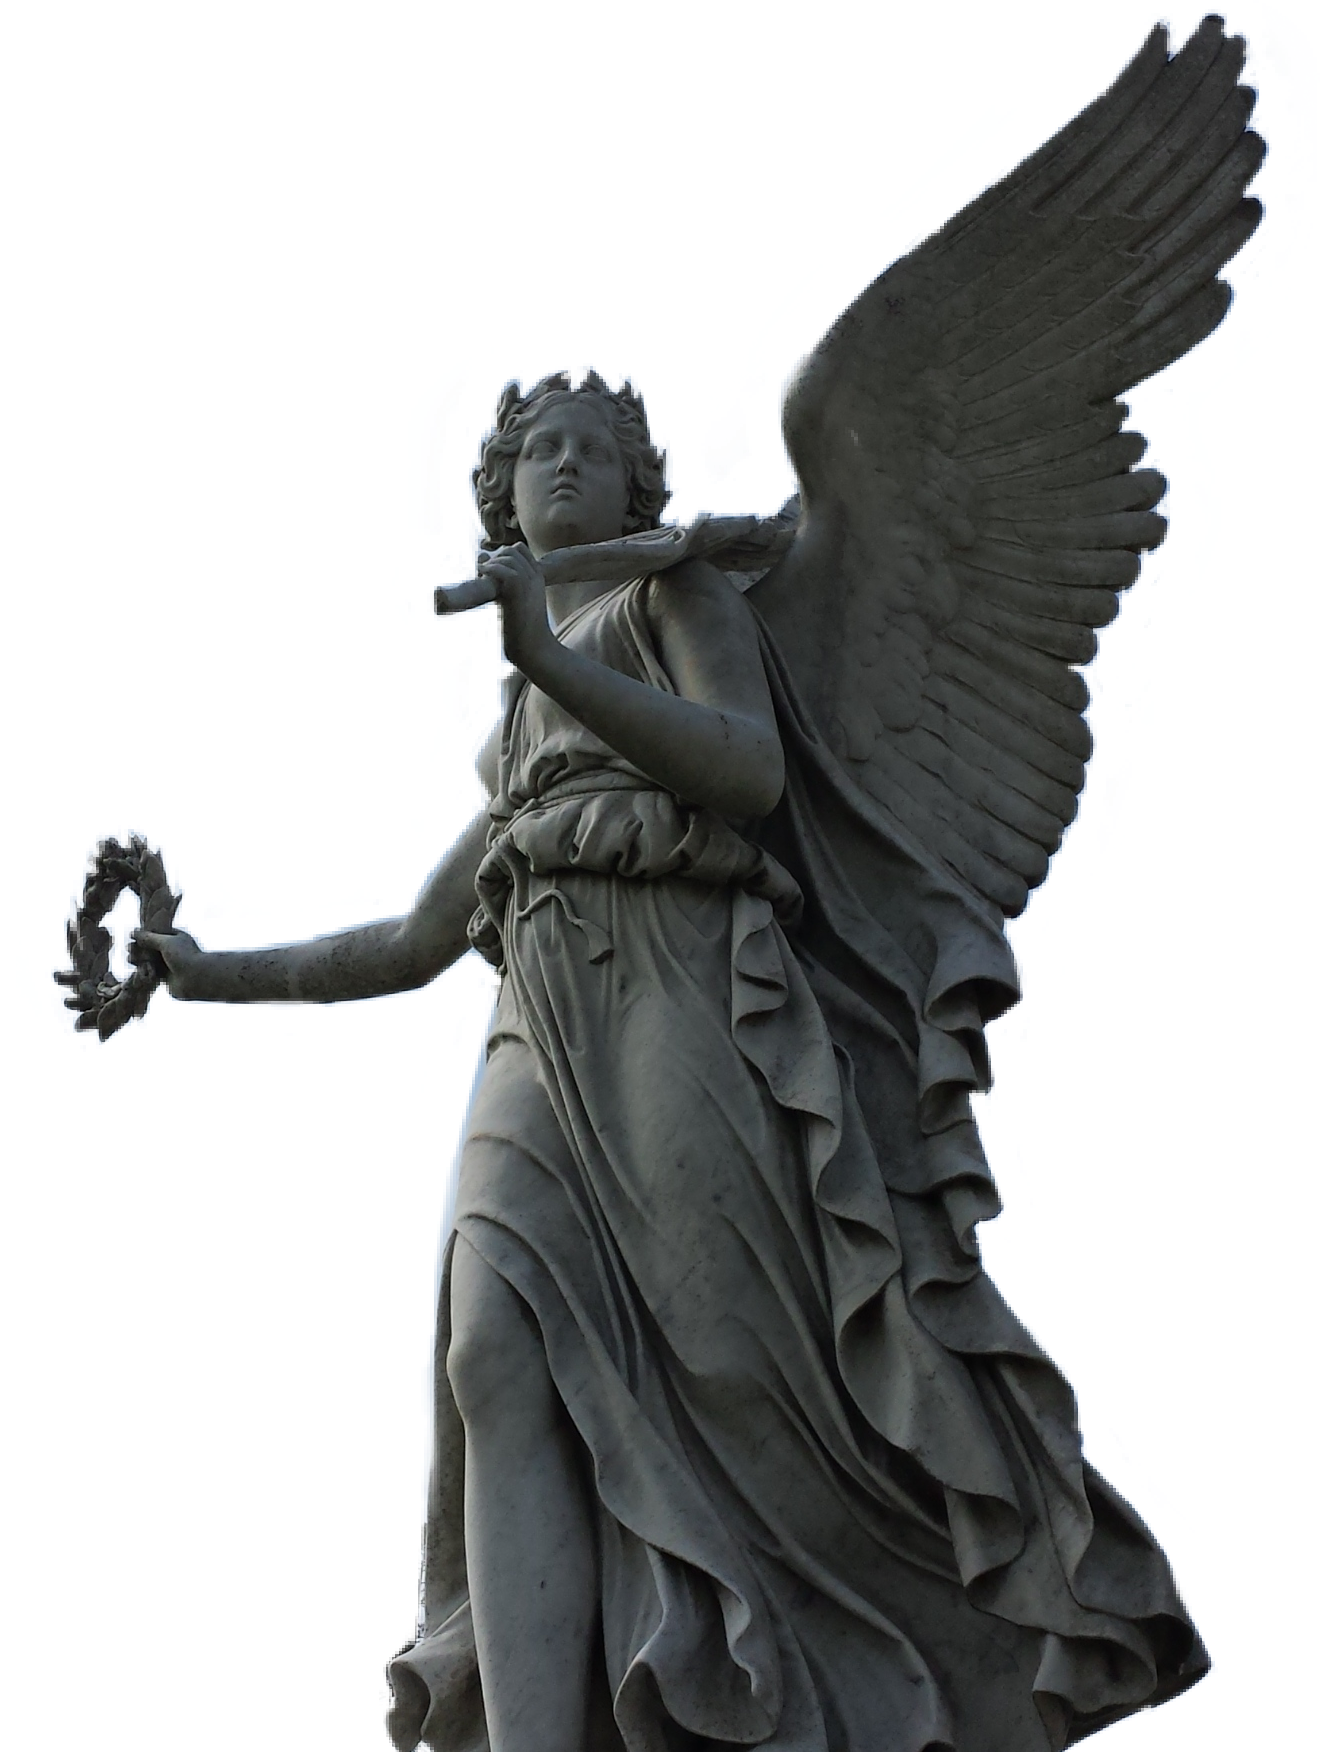 angel statue ireland freetoedit sticker by @kristenwatson